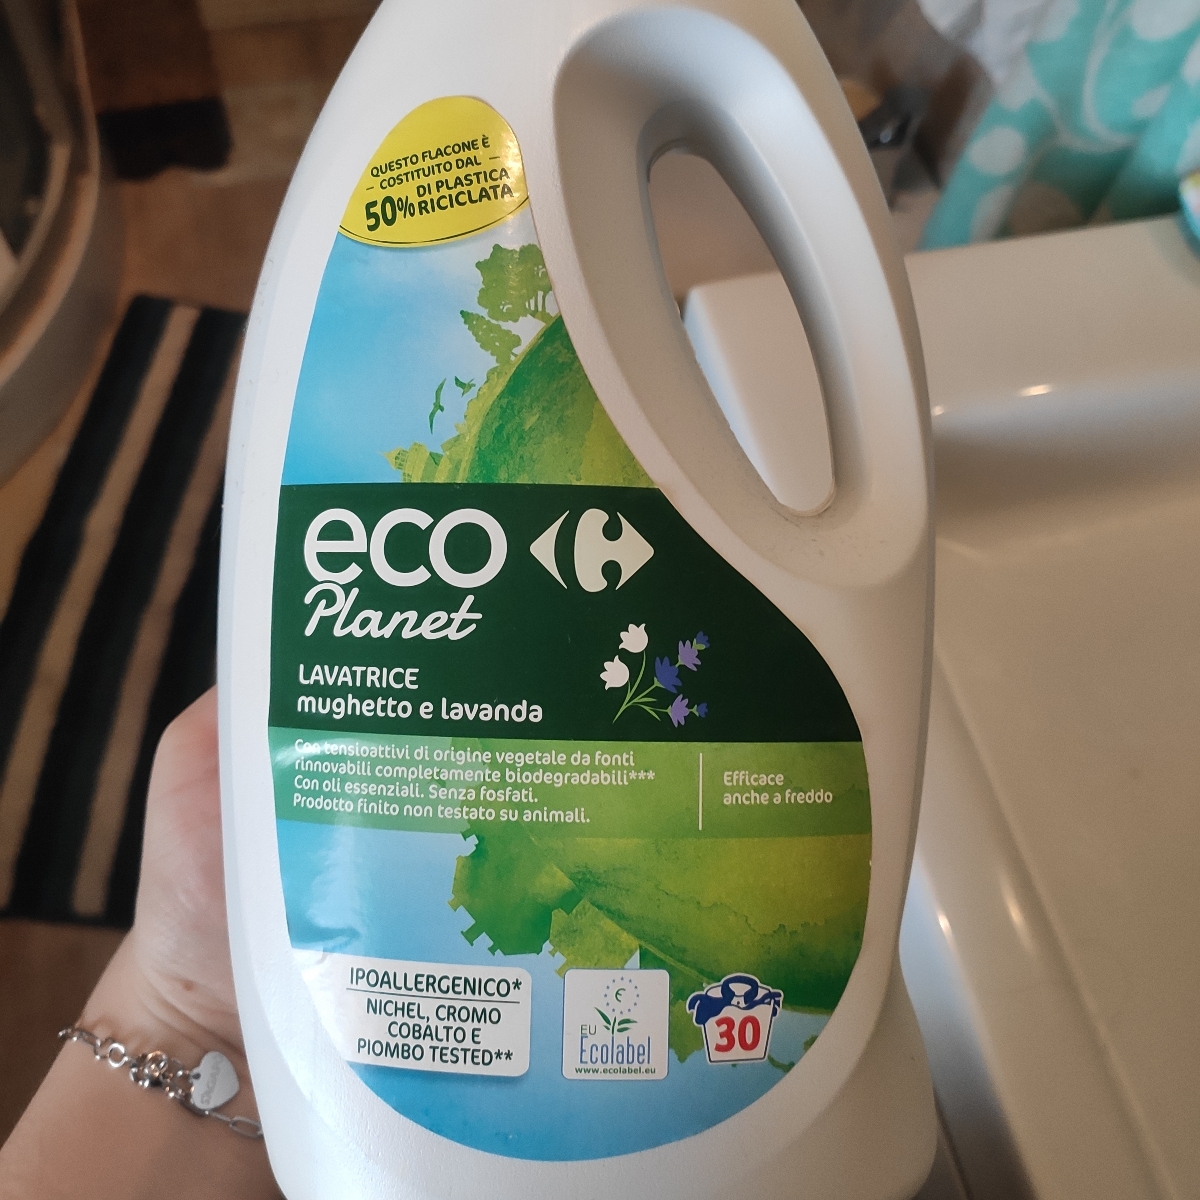 Carrefour Eco Planet Lavatrice Review | abillion